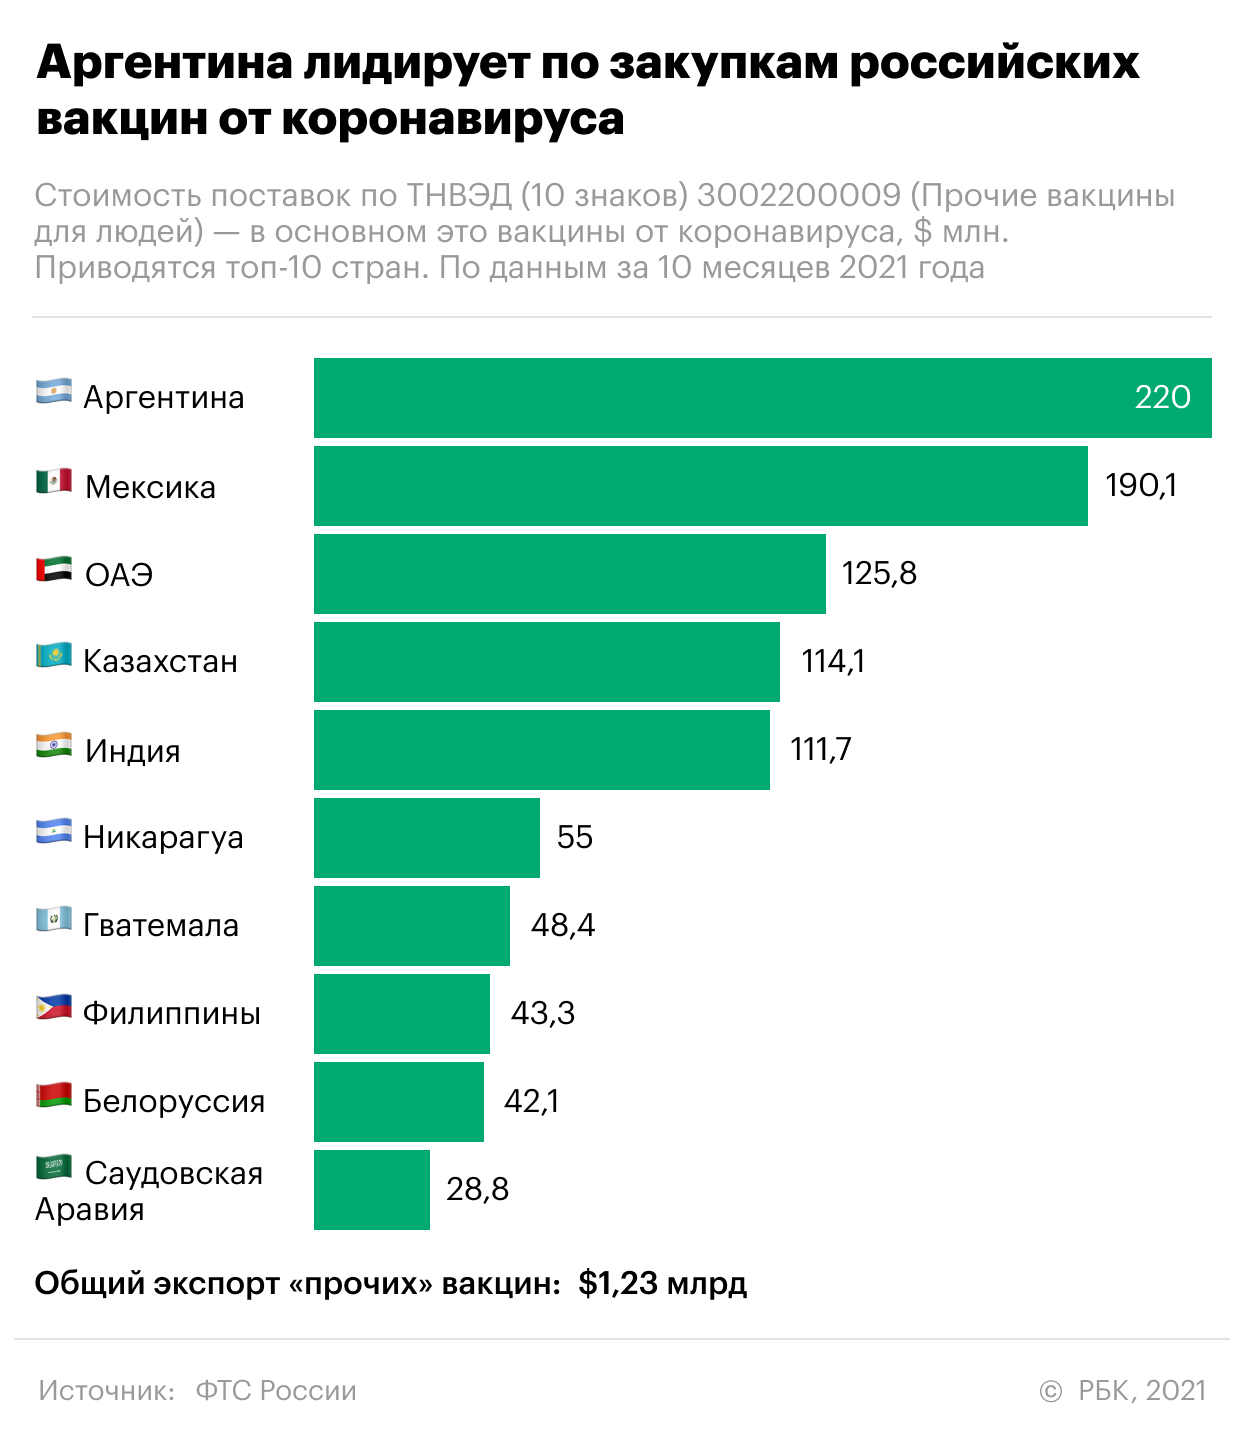 Какие страны покупают больше всего российских вакцин. Инфографика